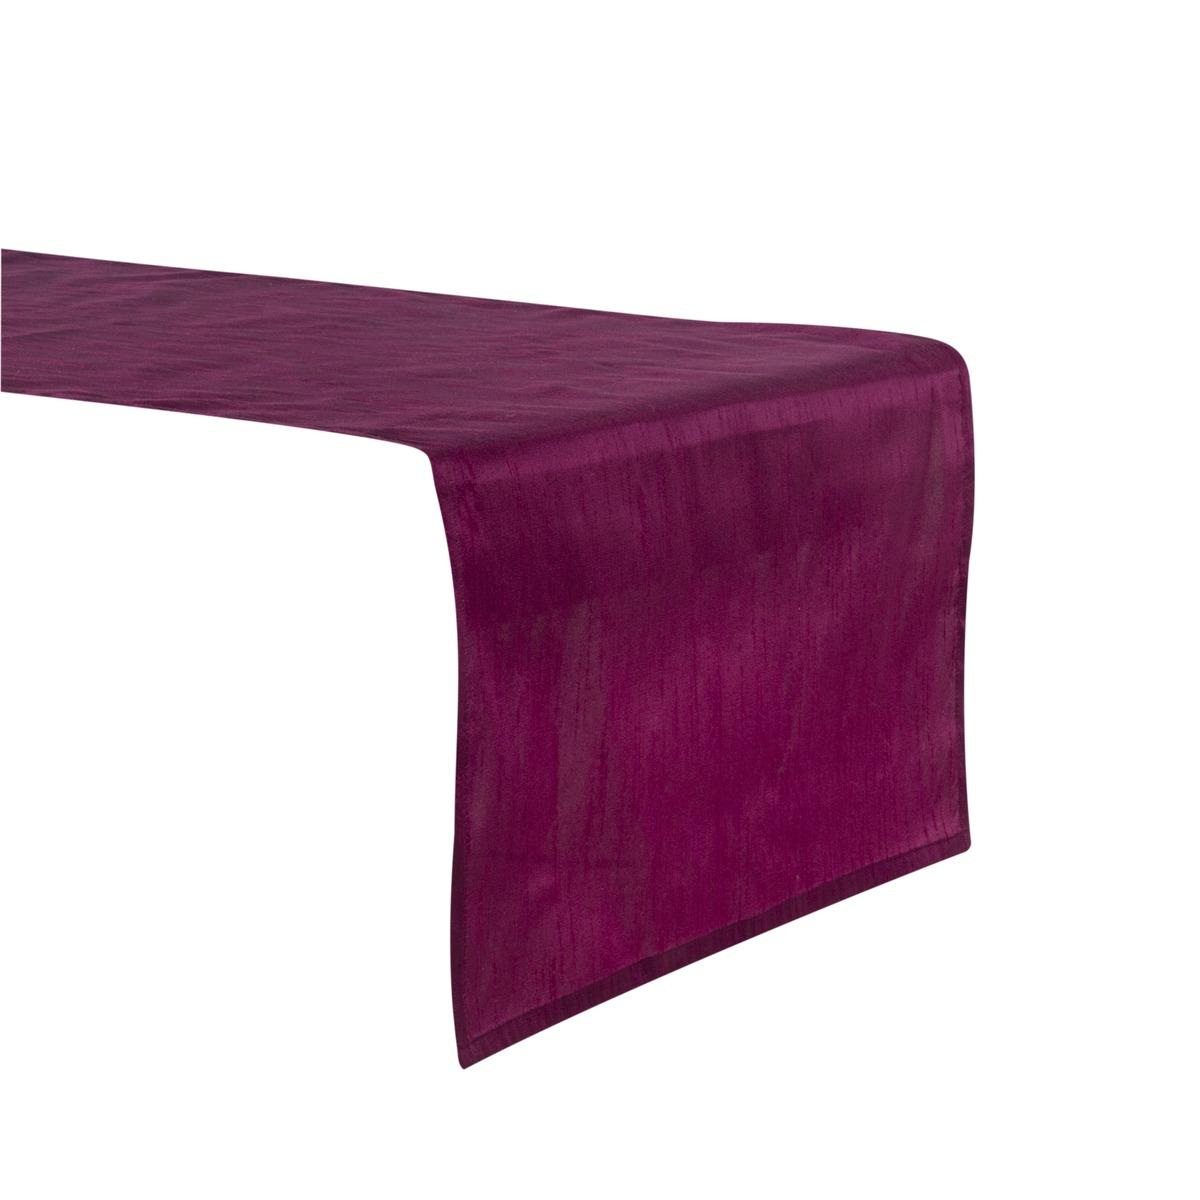 Chemin de table effet soie - 50 x 150 cm - Violet prune